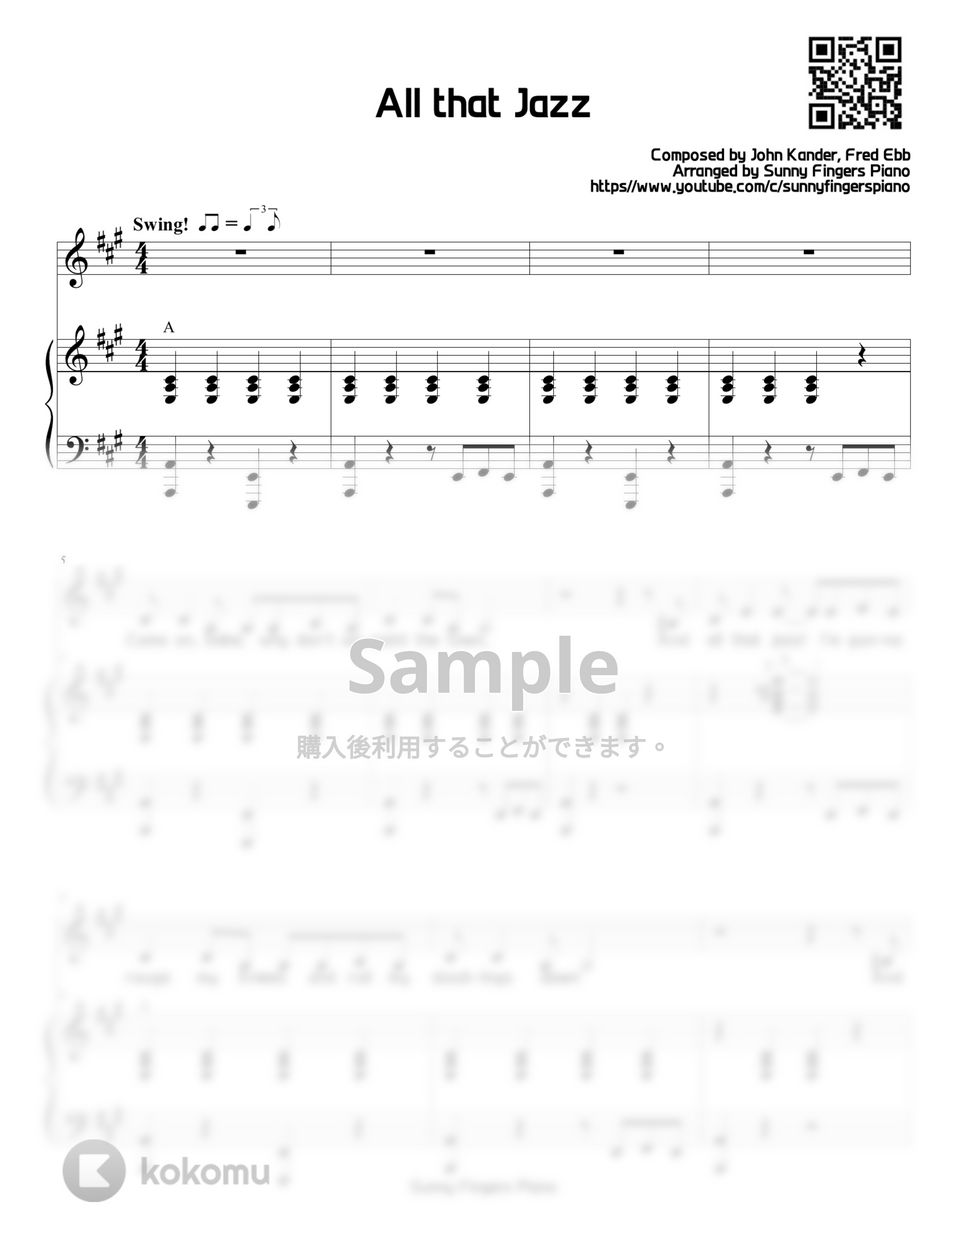 シカゴ - All that jazz (ボーカル＋伴奏) by Sunny Fingers Piano